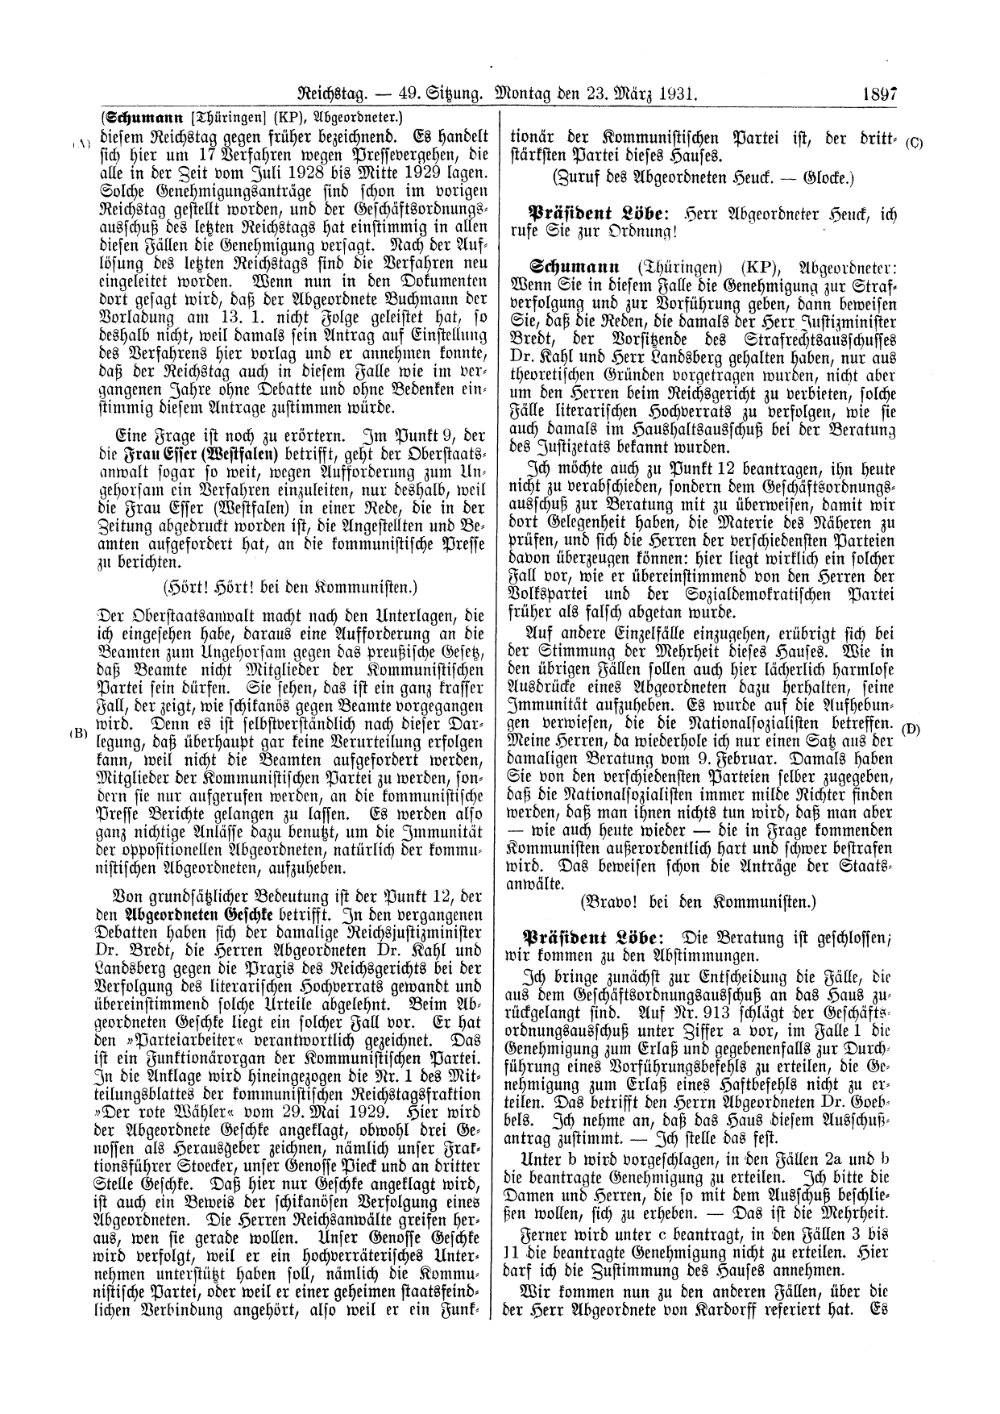 Scan der Seite 1897